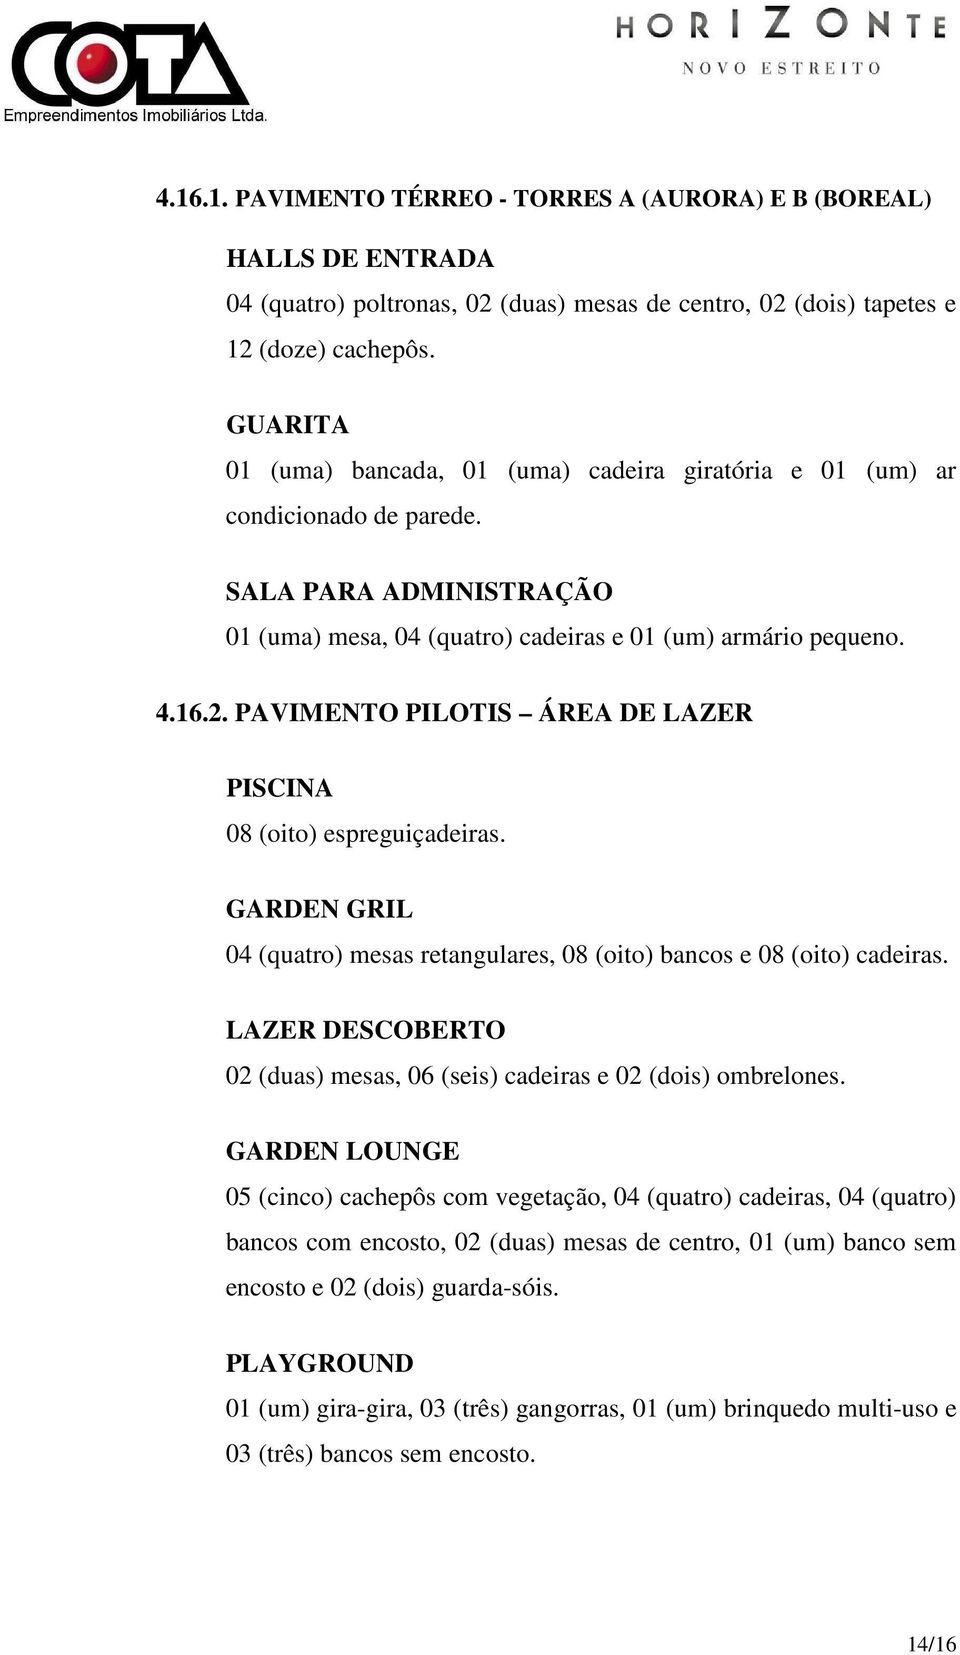 PAVIMENTO PILOTIS ÁREA DE LAZER PISCINA 08 (oito) espreguiçadeiras. GARDEN GRIL 04 (quatro) mesas retangulares, 08 (oito) bancos e 08 (oito) cadeiras.